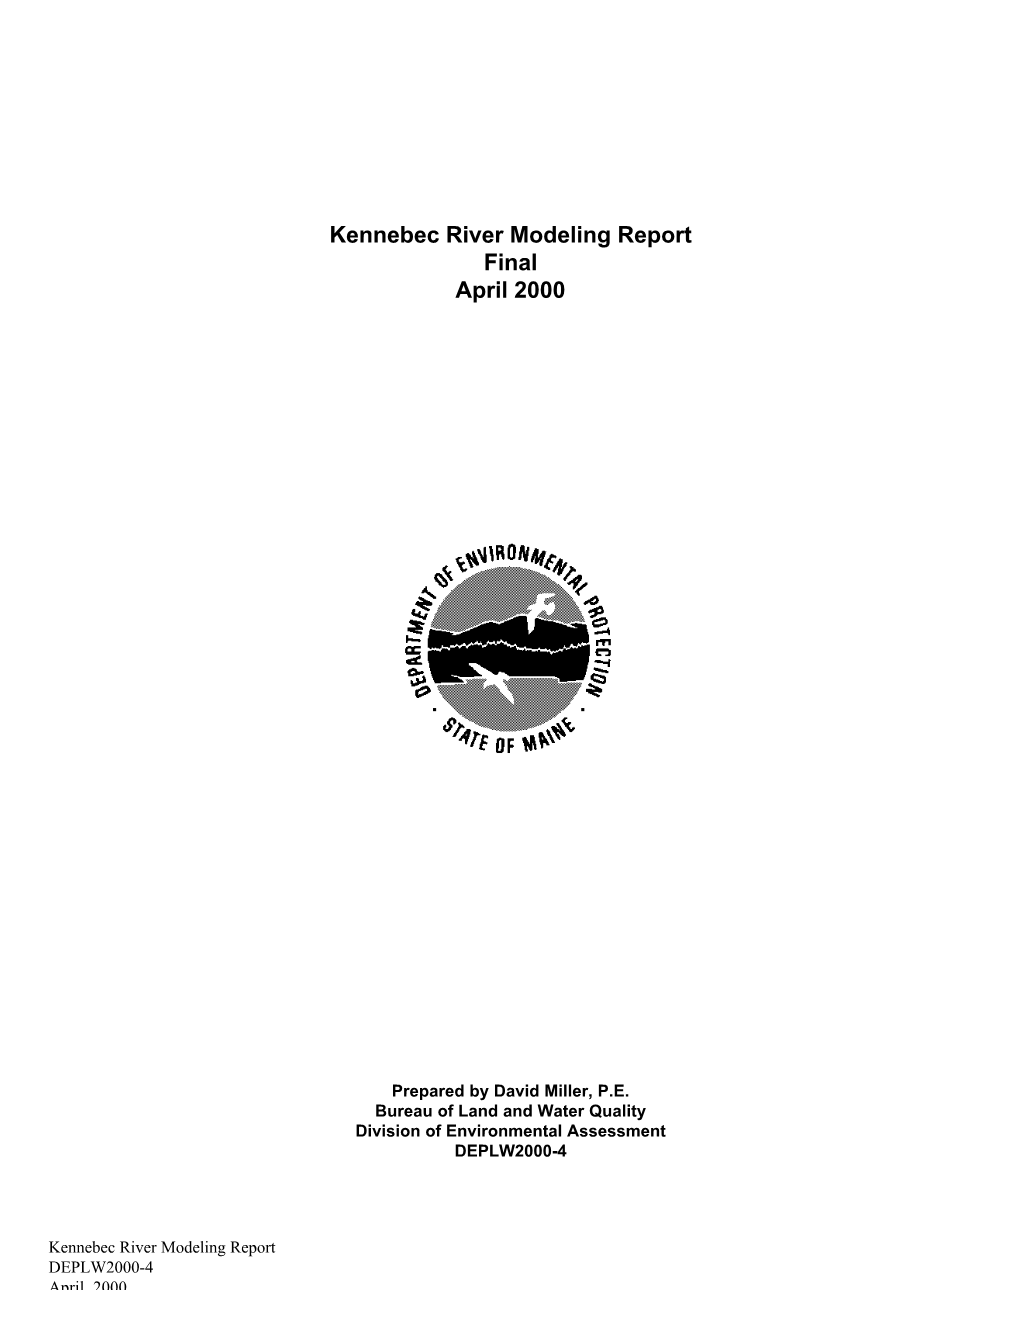 Kennebec River Modeling Report Final April 2000